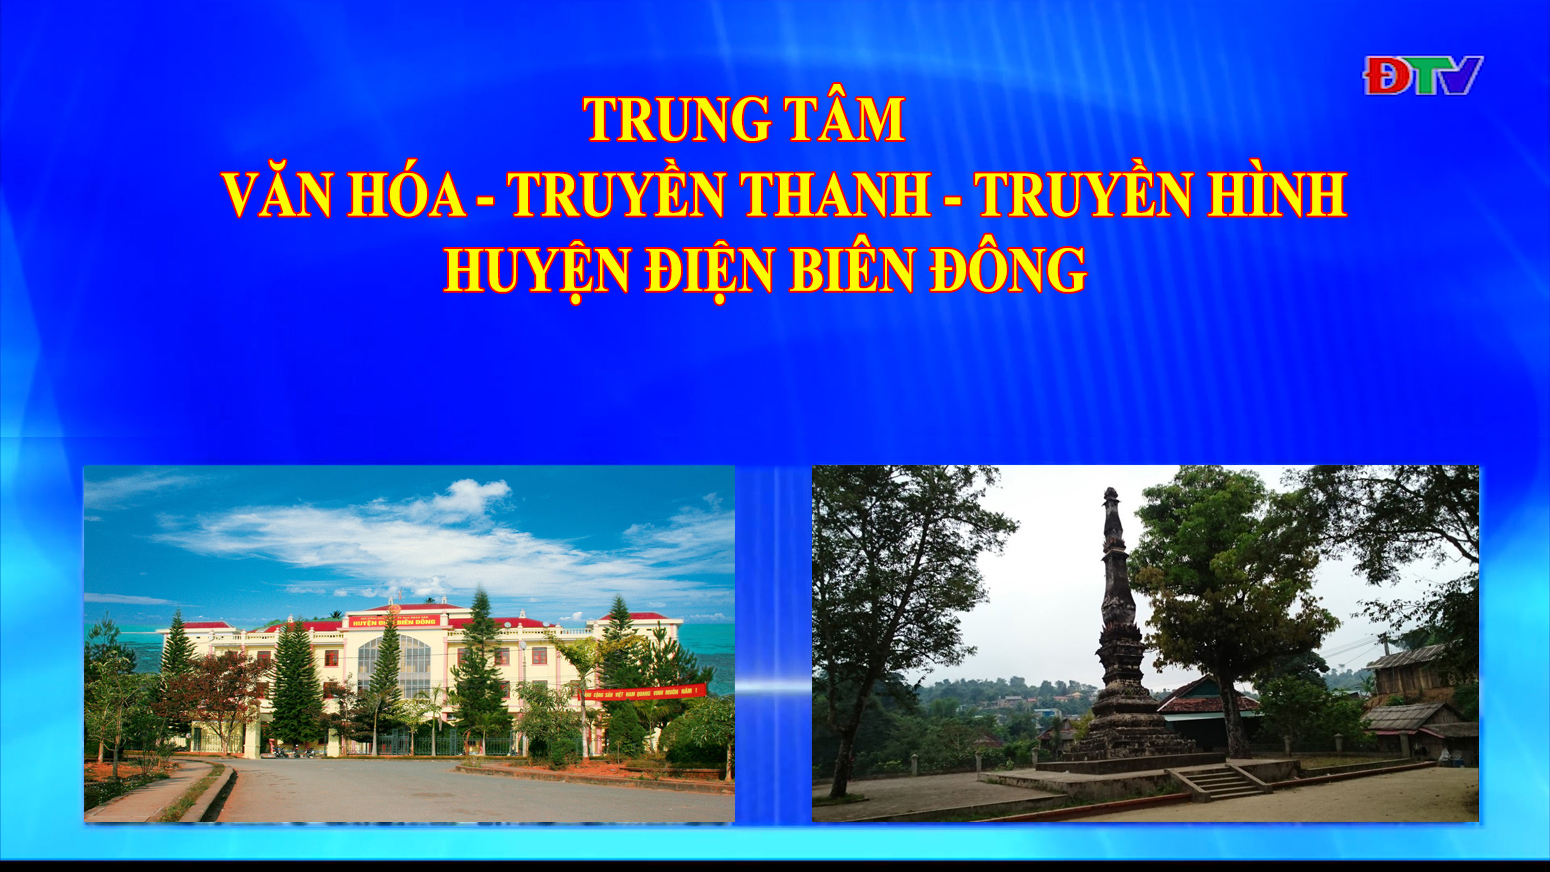 Trung tâm VH-TTTH huyện Điện Biên Đông (Ngày 7-5-2022)